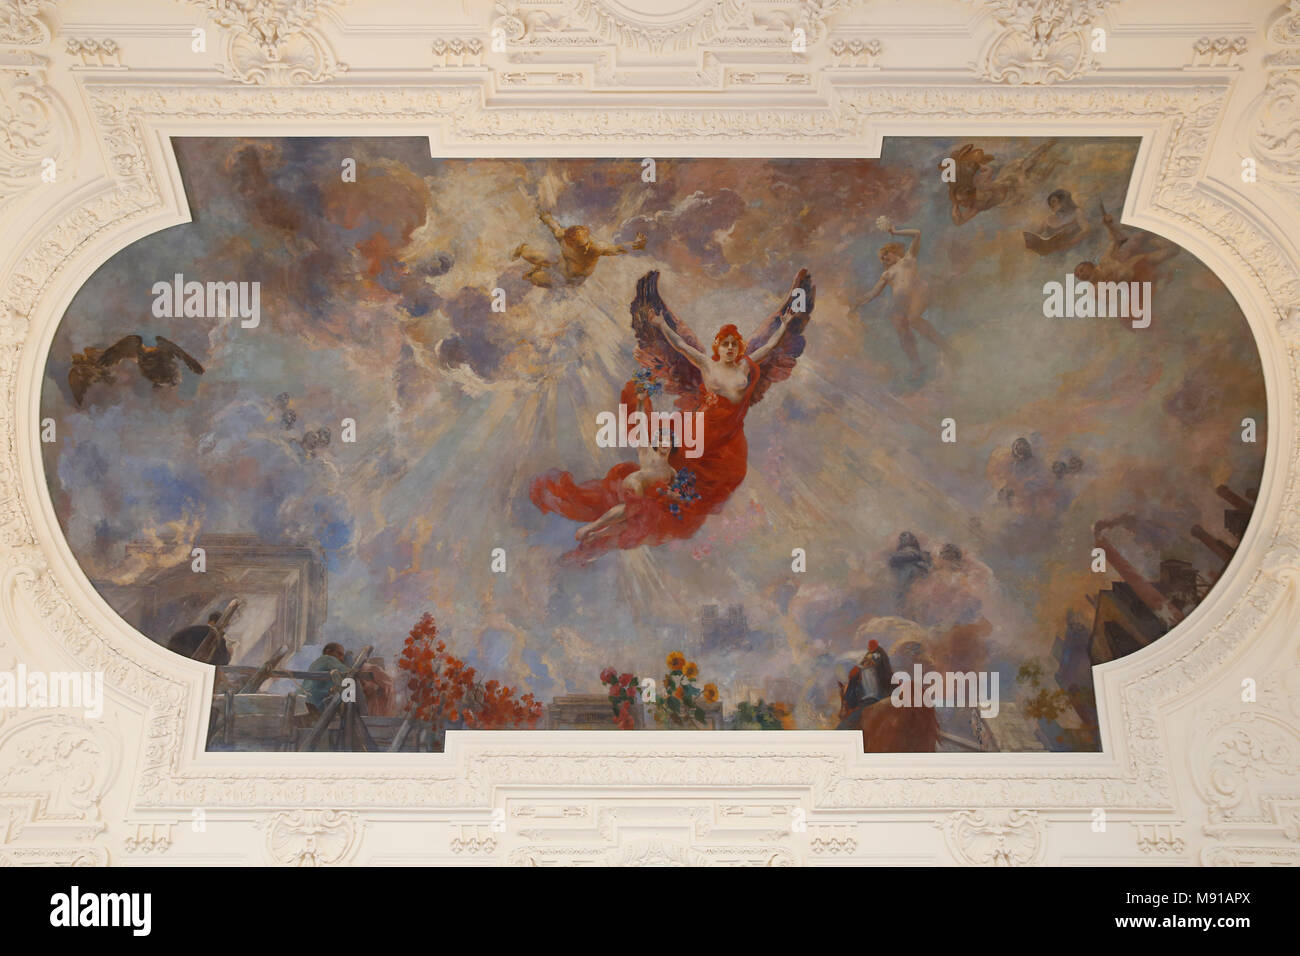 Petit Palais museum, Paris, France. Ceiling fresco. Stock Photo